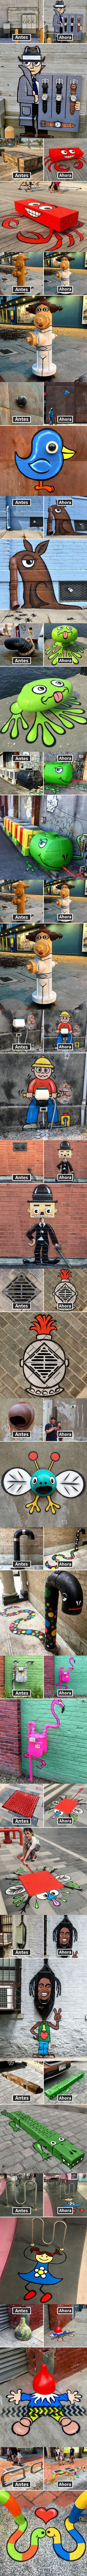 Meme_otros - Este artista crea auténticas obras de arte en la calle con objetos que ve en su día a día